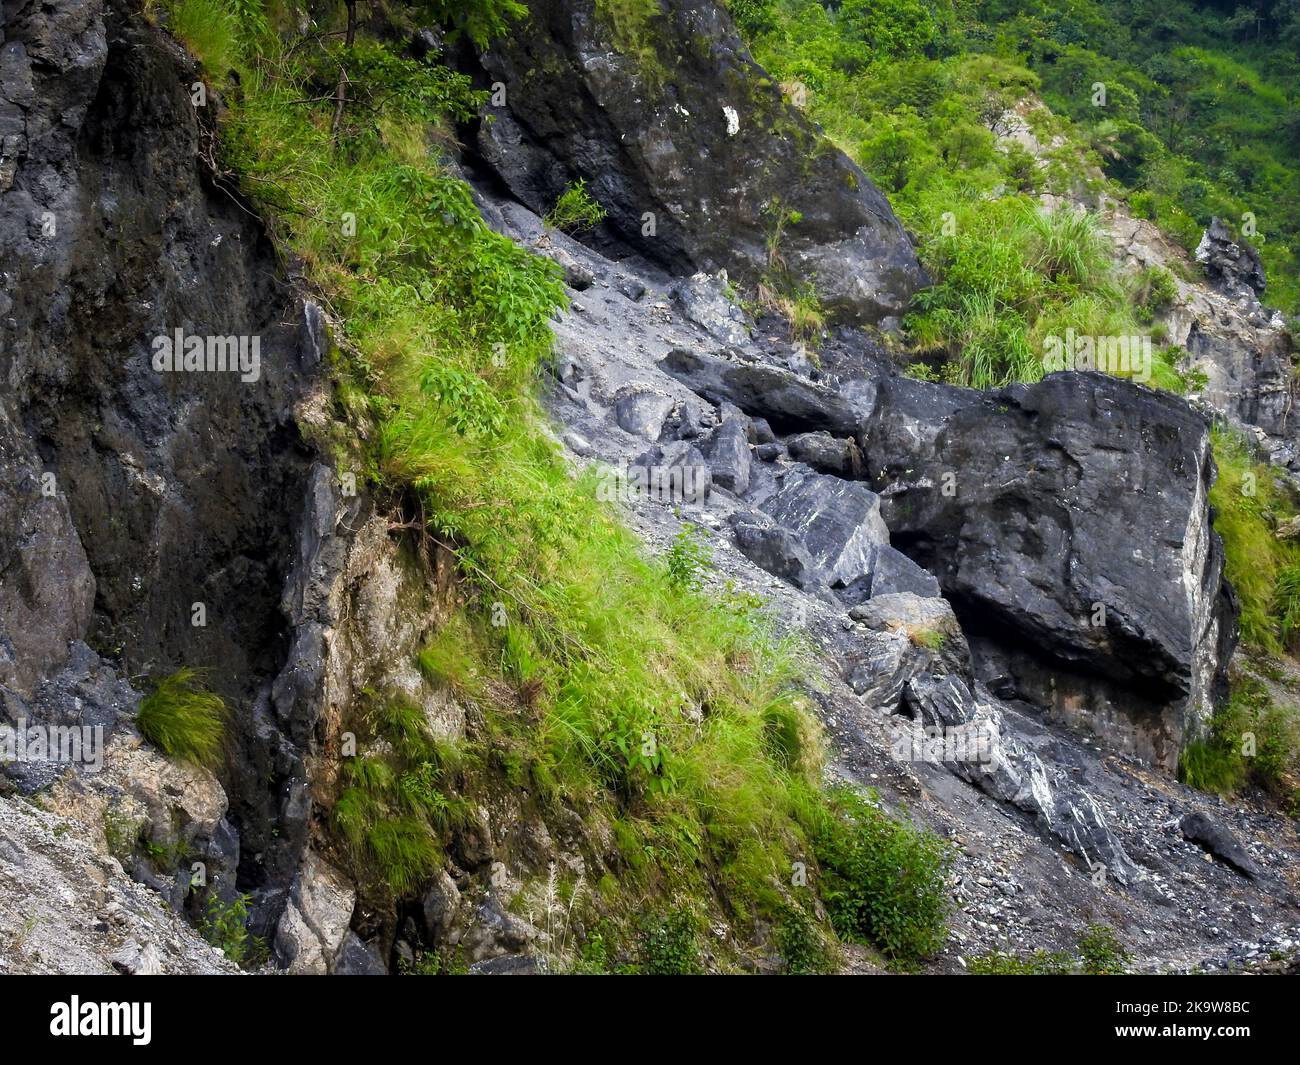 Rauer grauer Stein der Berge der unteren Himalaya-Region von Uttarakhand Indien. Shivalik Mountains. Geologie Und Bergsteigen. Stockfoto